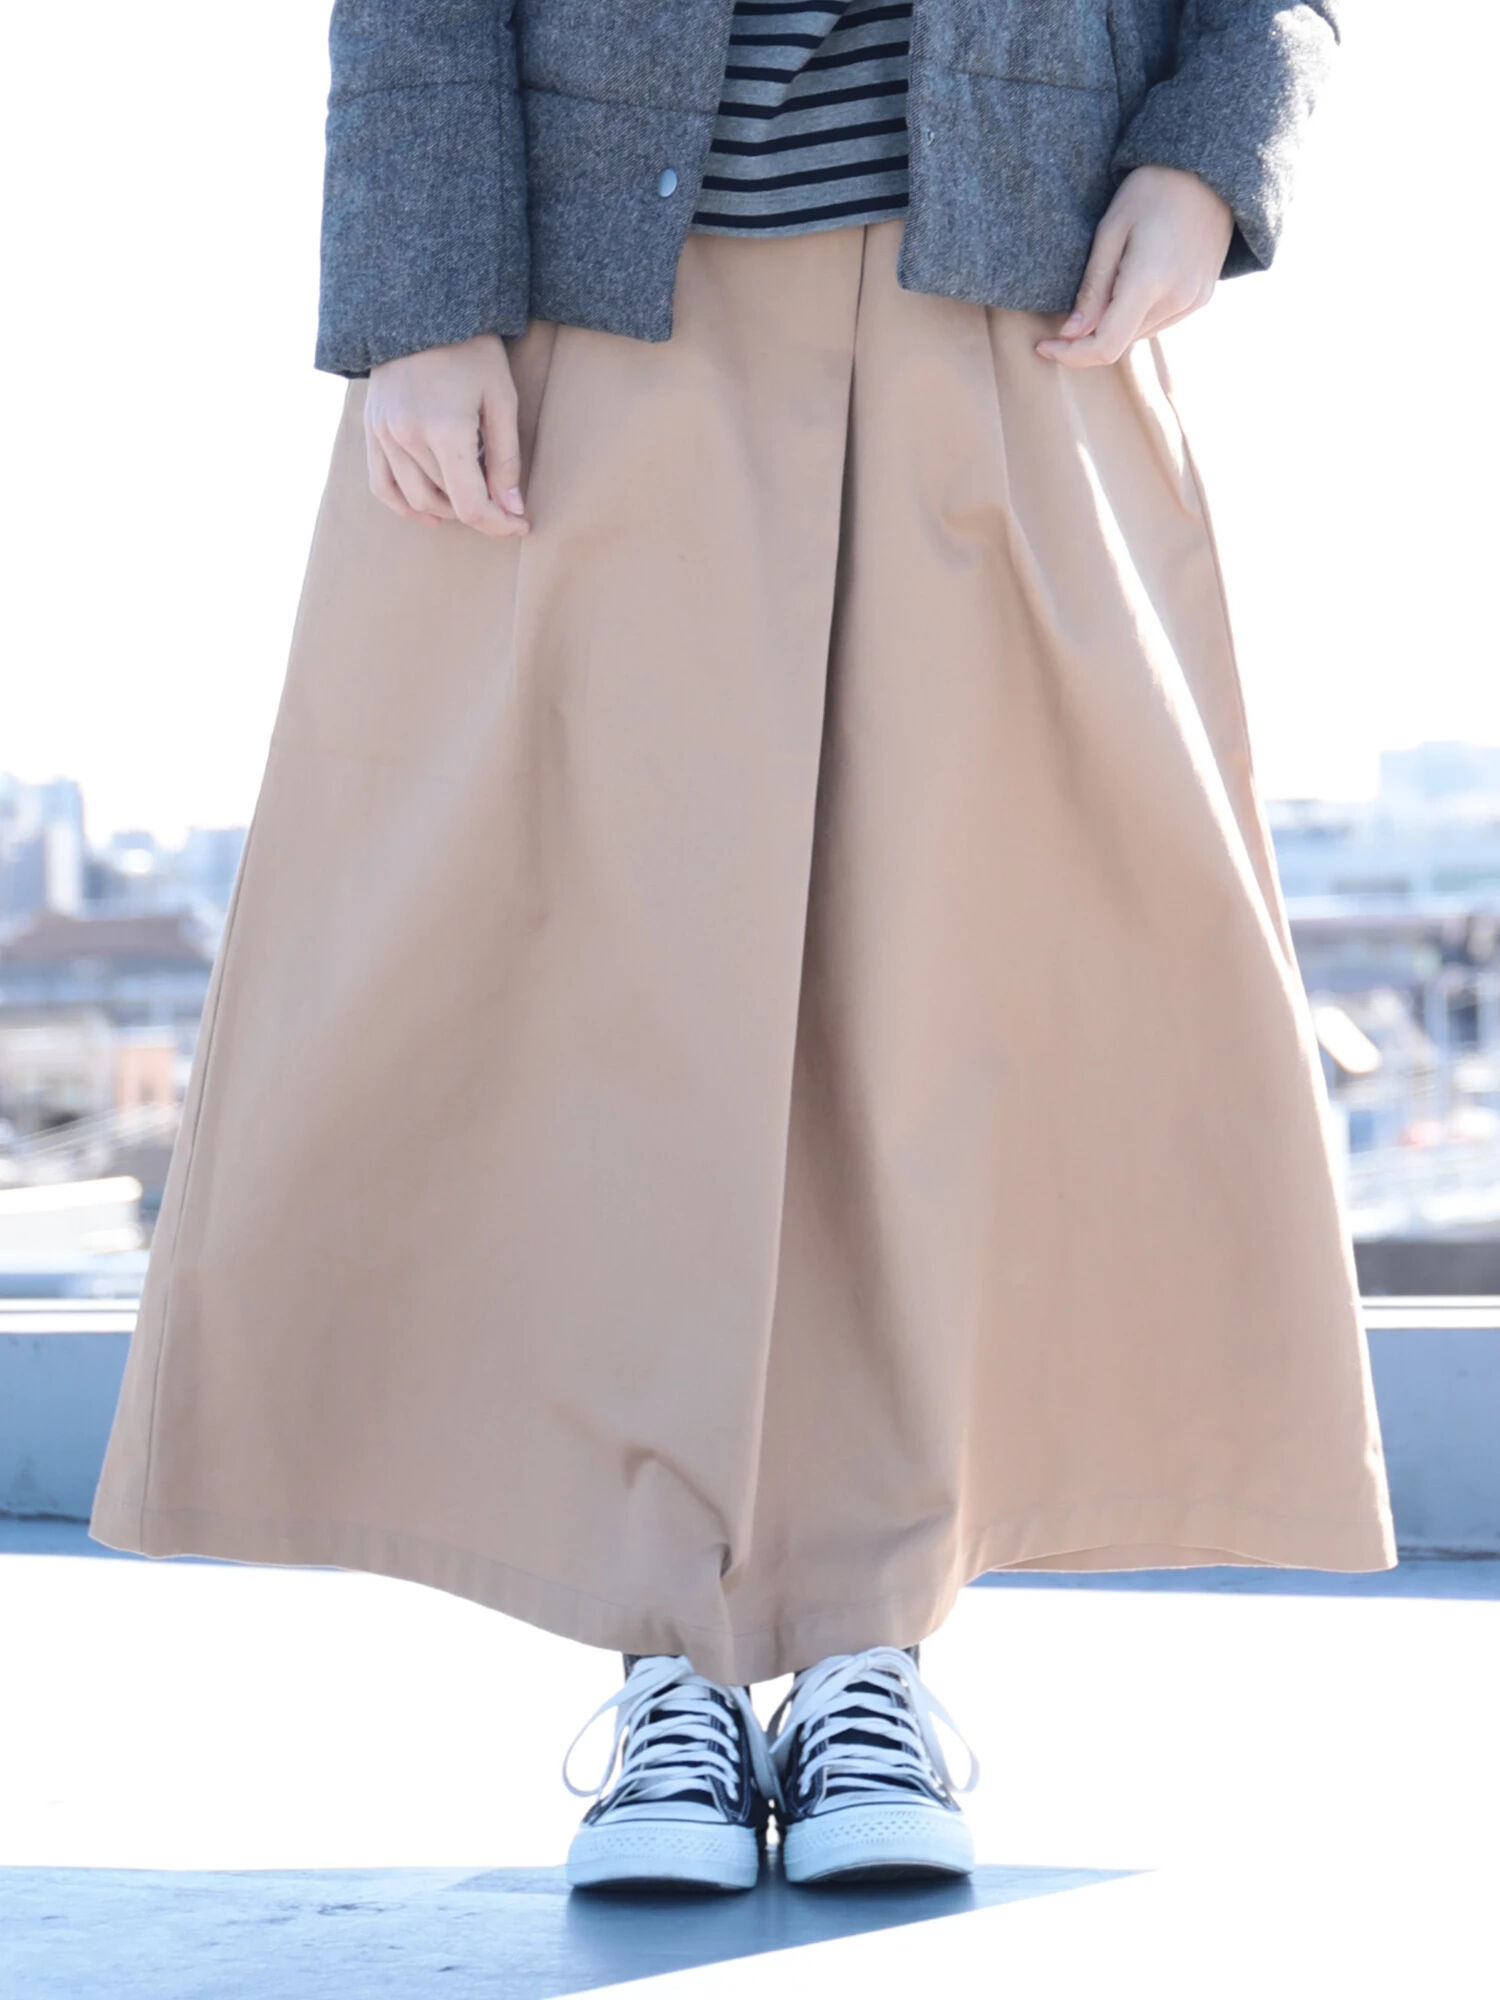 SEVENDAYSu003dSUNDAY(セブンデイズ サンデイ)のラップ綿ツイルスカート（スカート） - ファッションレンタルのメチャカリ